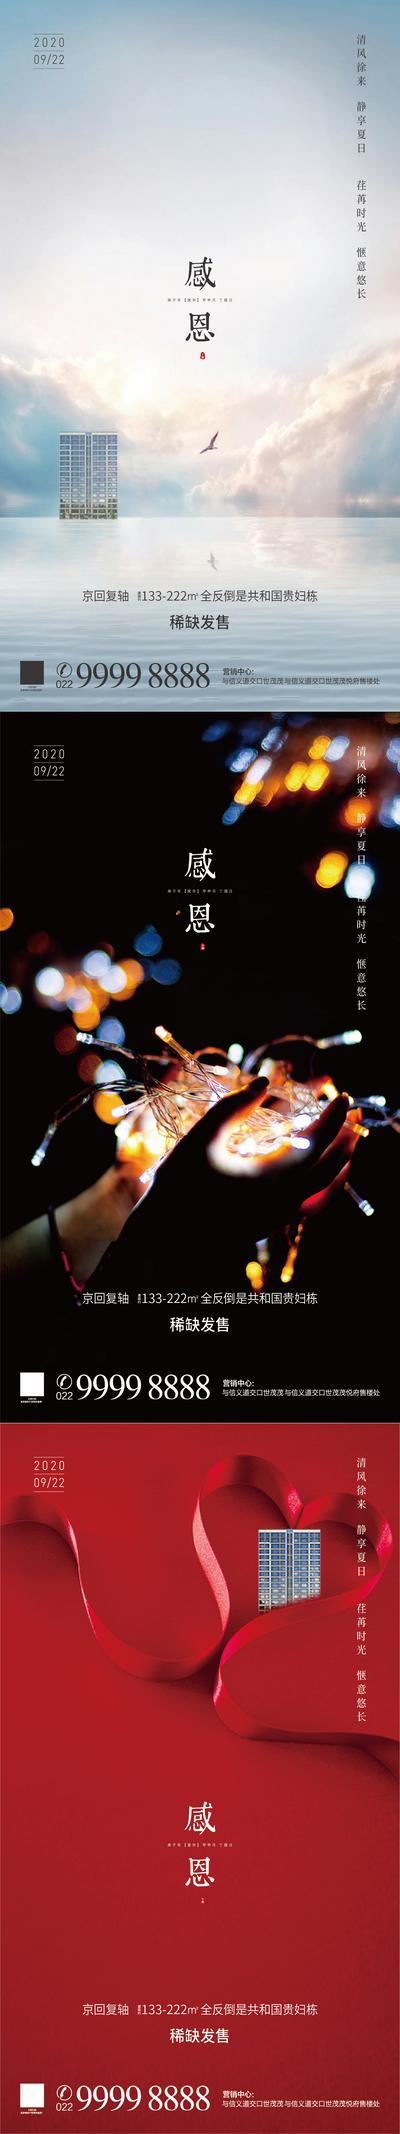 【南门网】海报  房地产  系列  感恩节  公历节日    建筑  爱心  彩带  彩灯